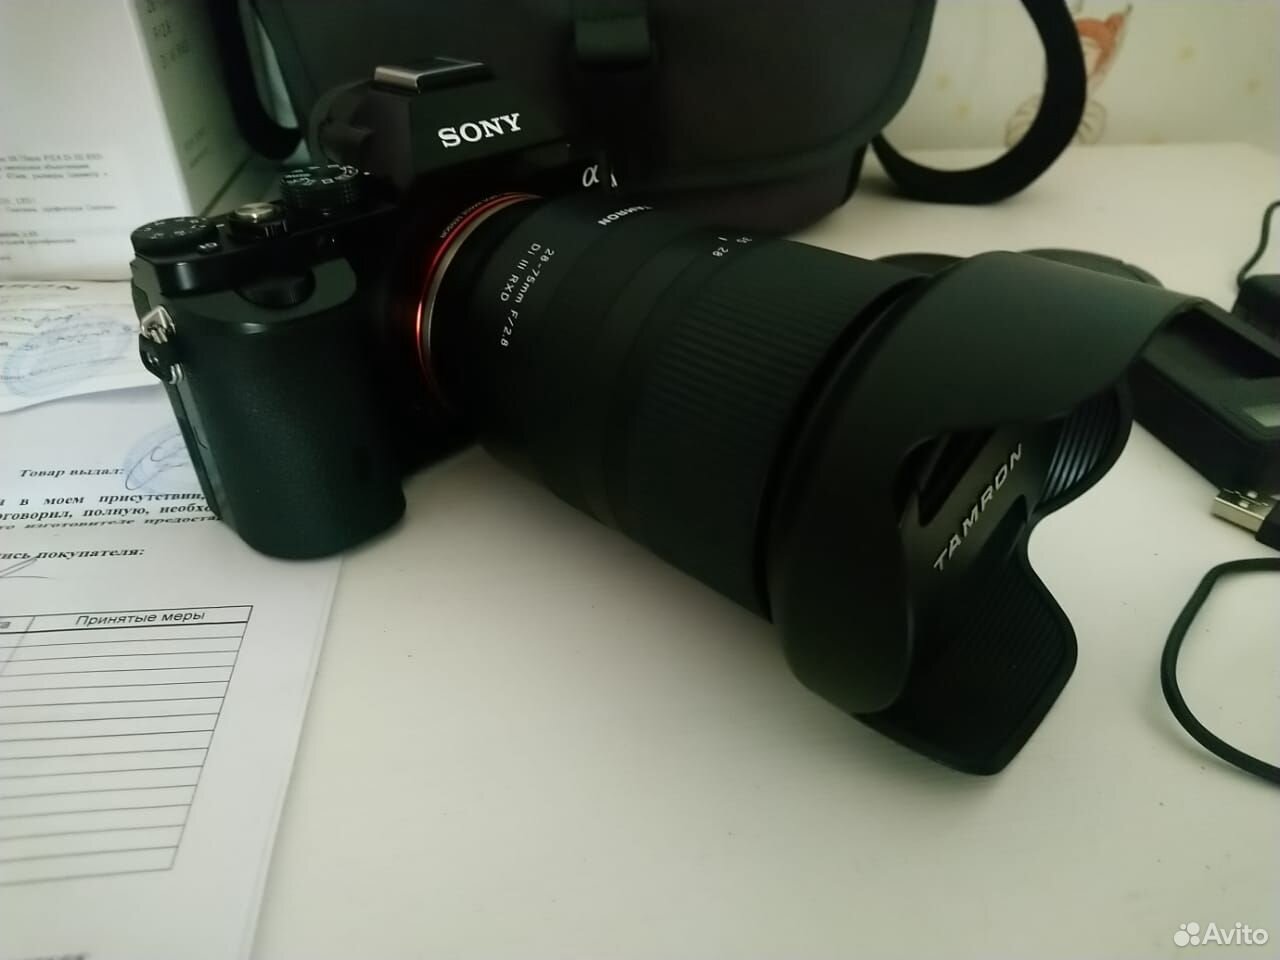 Камера Sony 7 с байонетом Е и объекивом 89273067272 купить 1